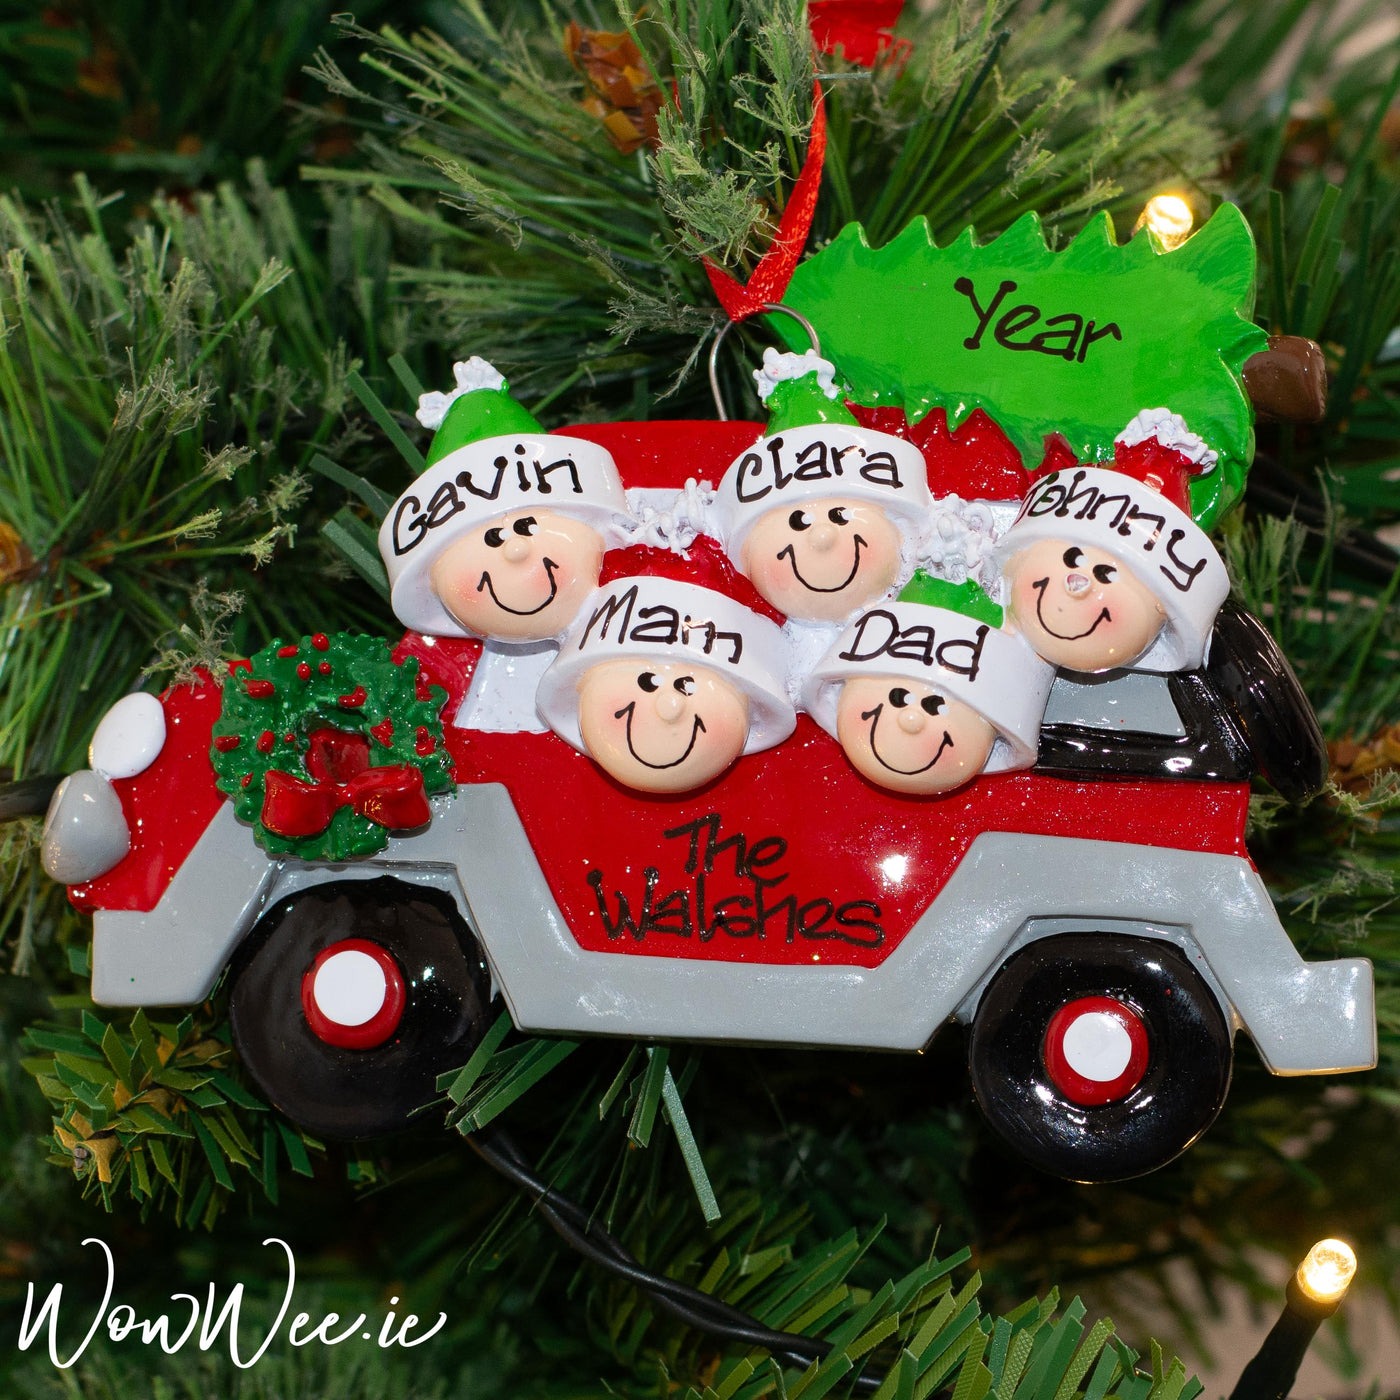 Personalised Christmas Ornament - Christmas Tree Caravan 5 - WowWee.ie Personalised Gifts